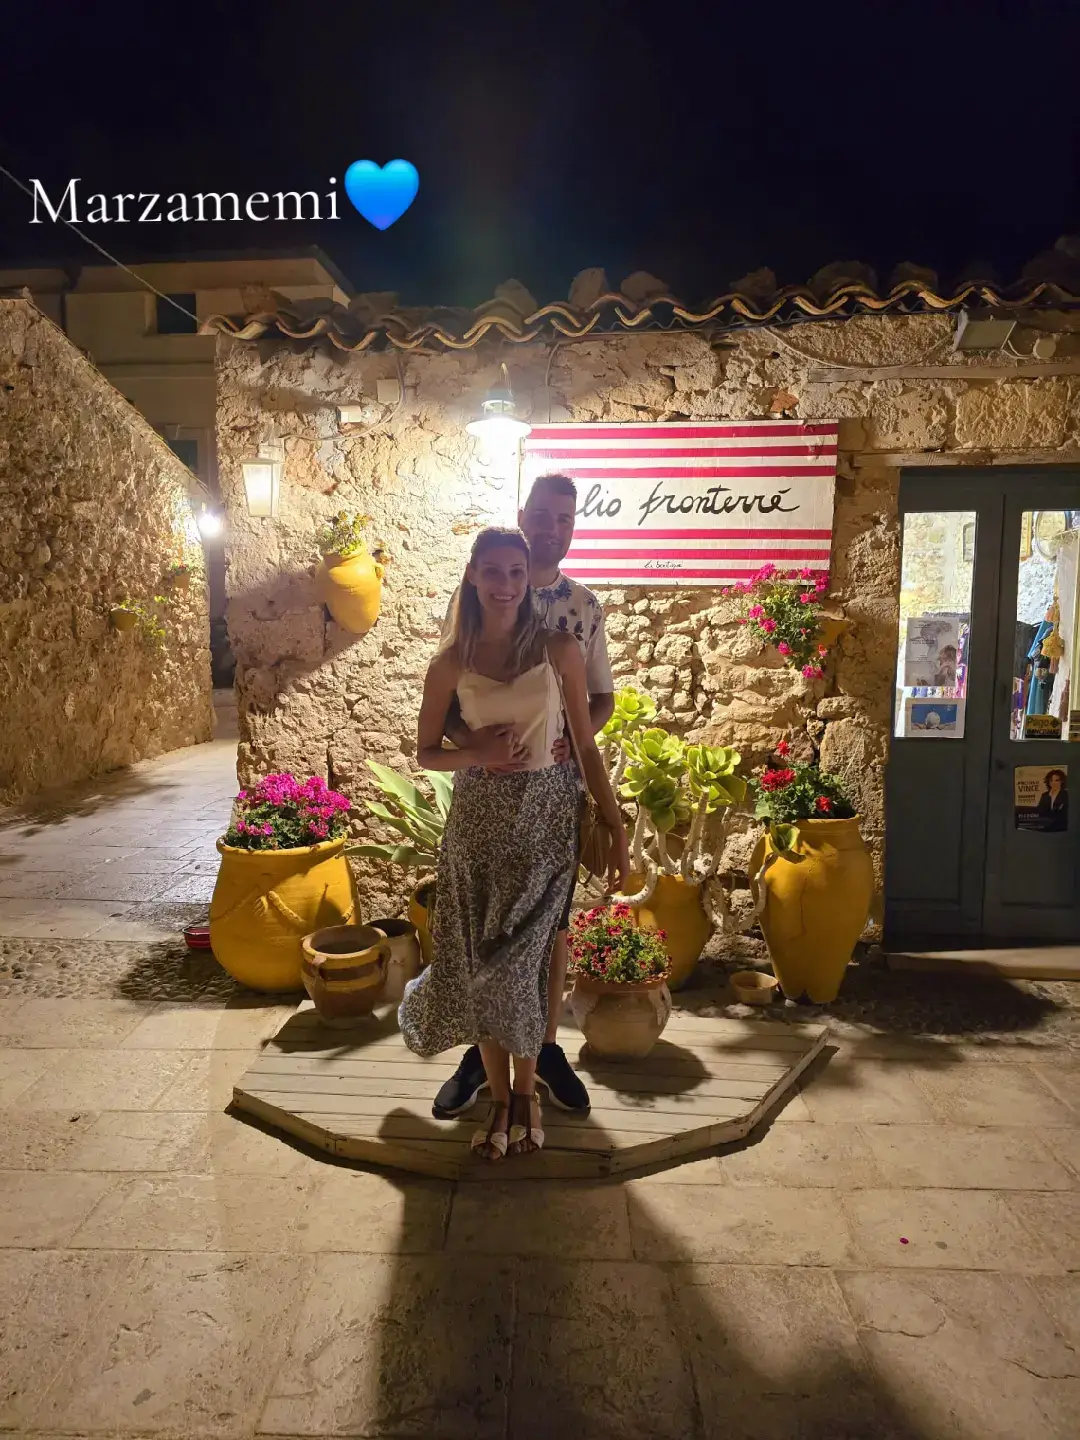 Marzamemi💙 un piccolo borgo meraviglioso #marzamemi #marzamemisicilia #visit_sicily #sicilia #sicily #borgo #photography #photomagic #andiamoneiperte #traveltiktok #travel #siciliabedda #marzamemi2024 #estate 